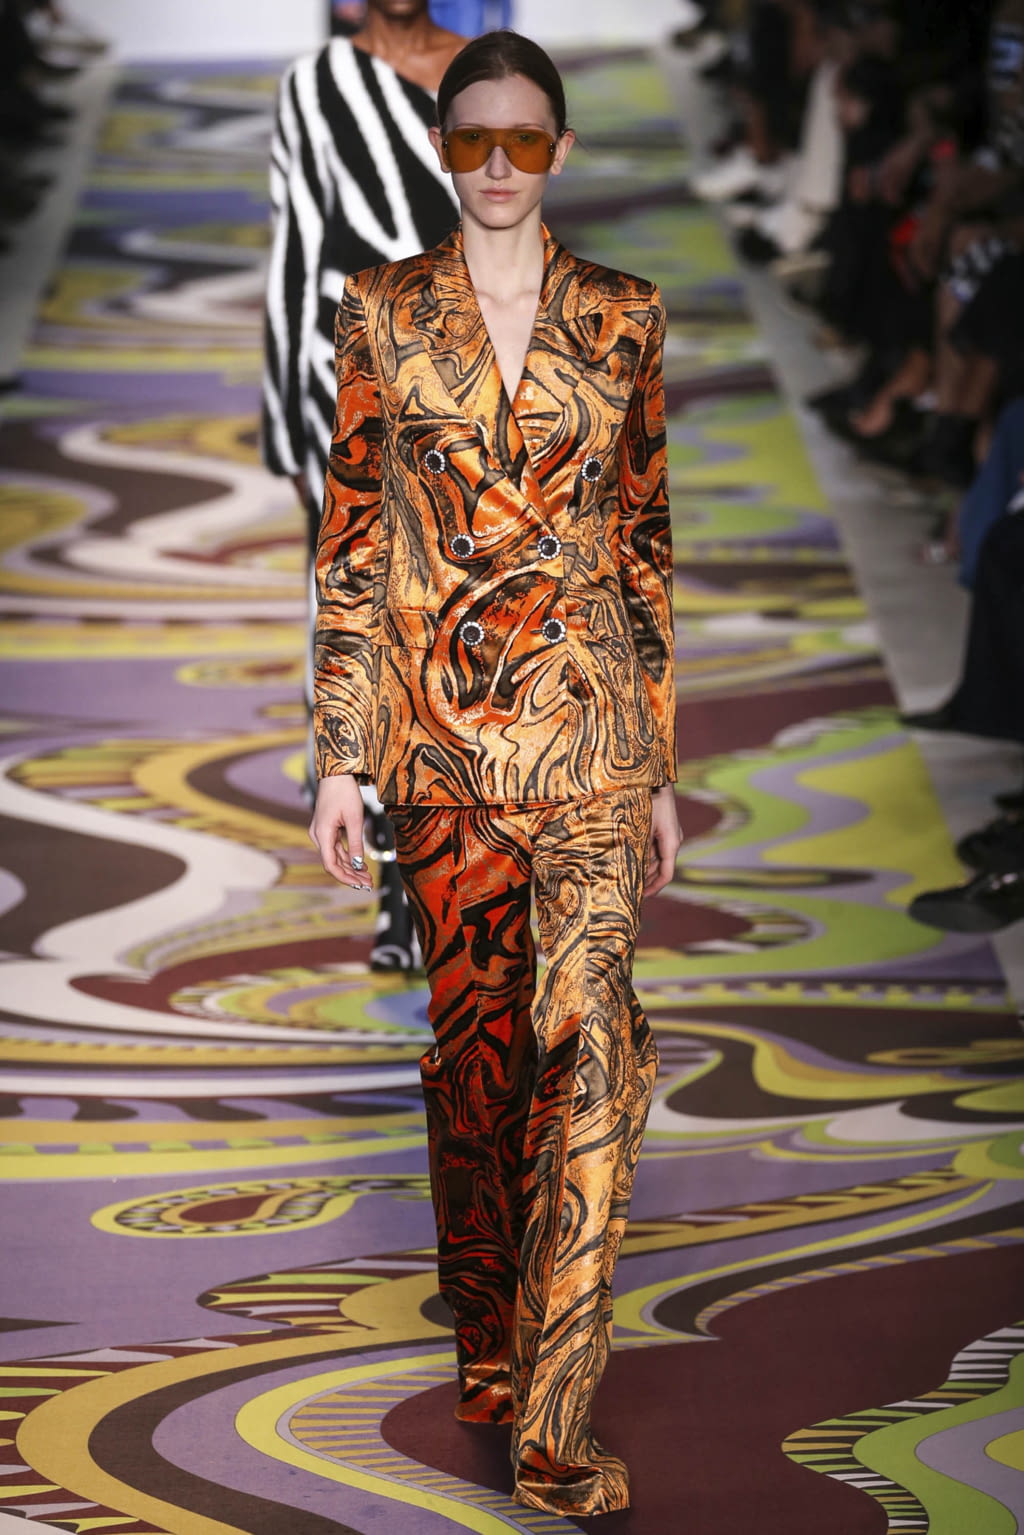 Emilio Pucci F/W 17 womenswear #21 - Tagwalk: The Fashion Search Engine